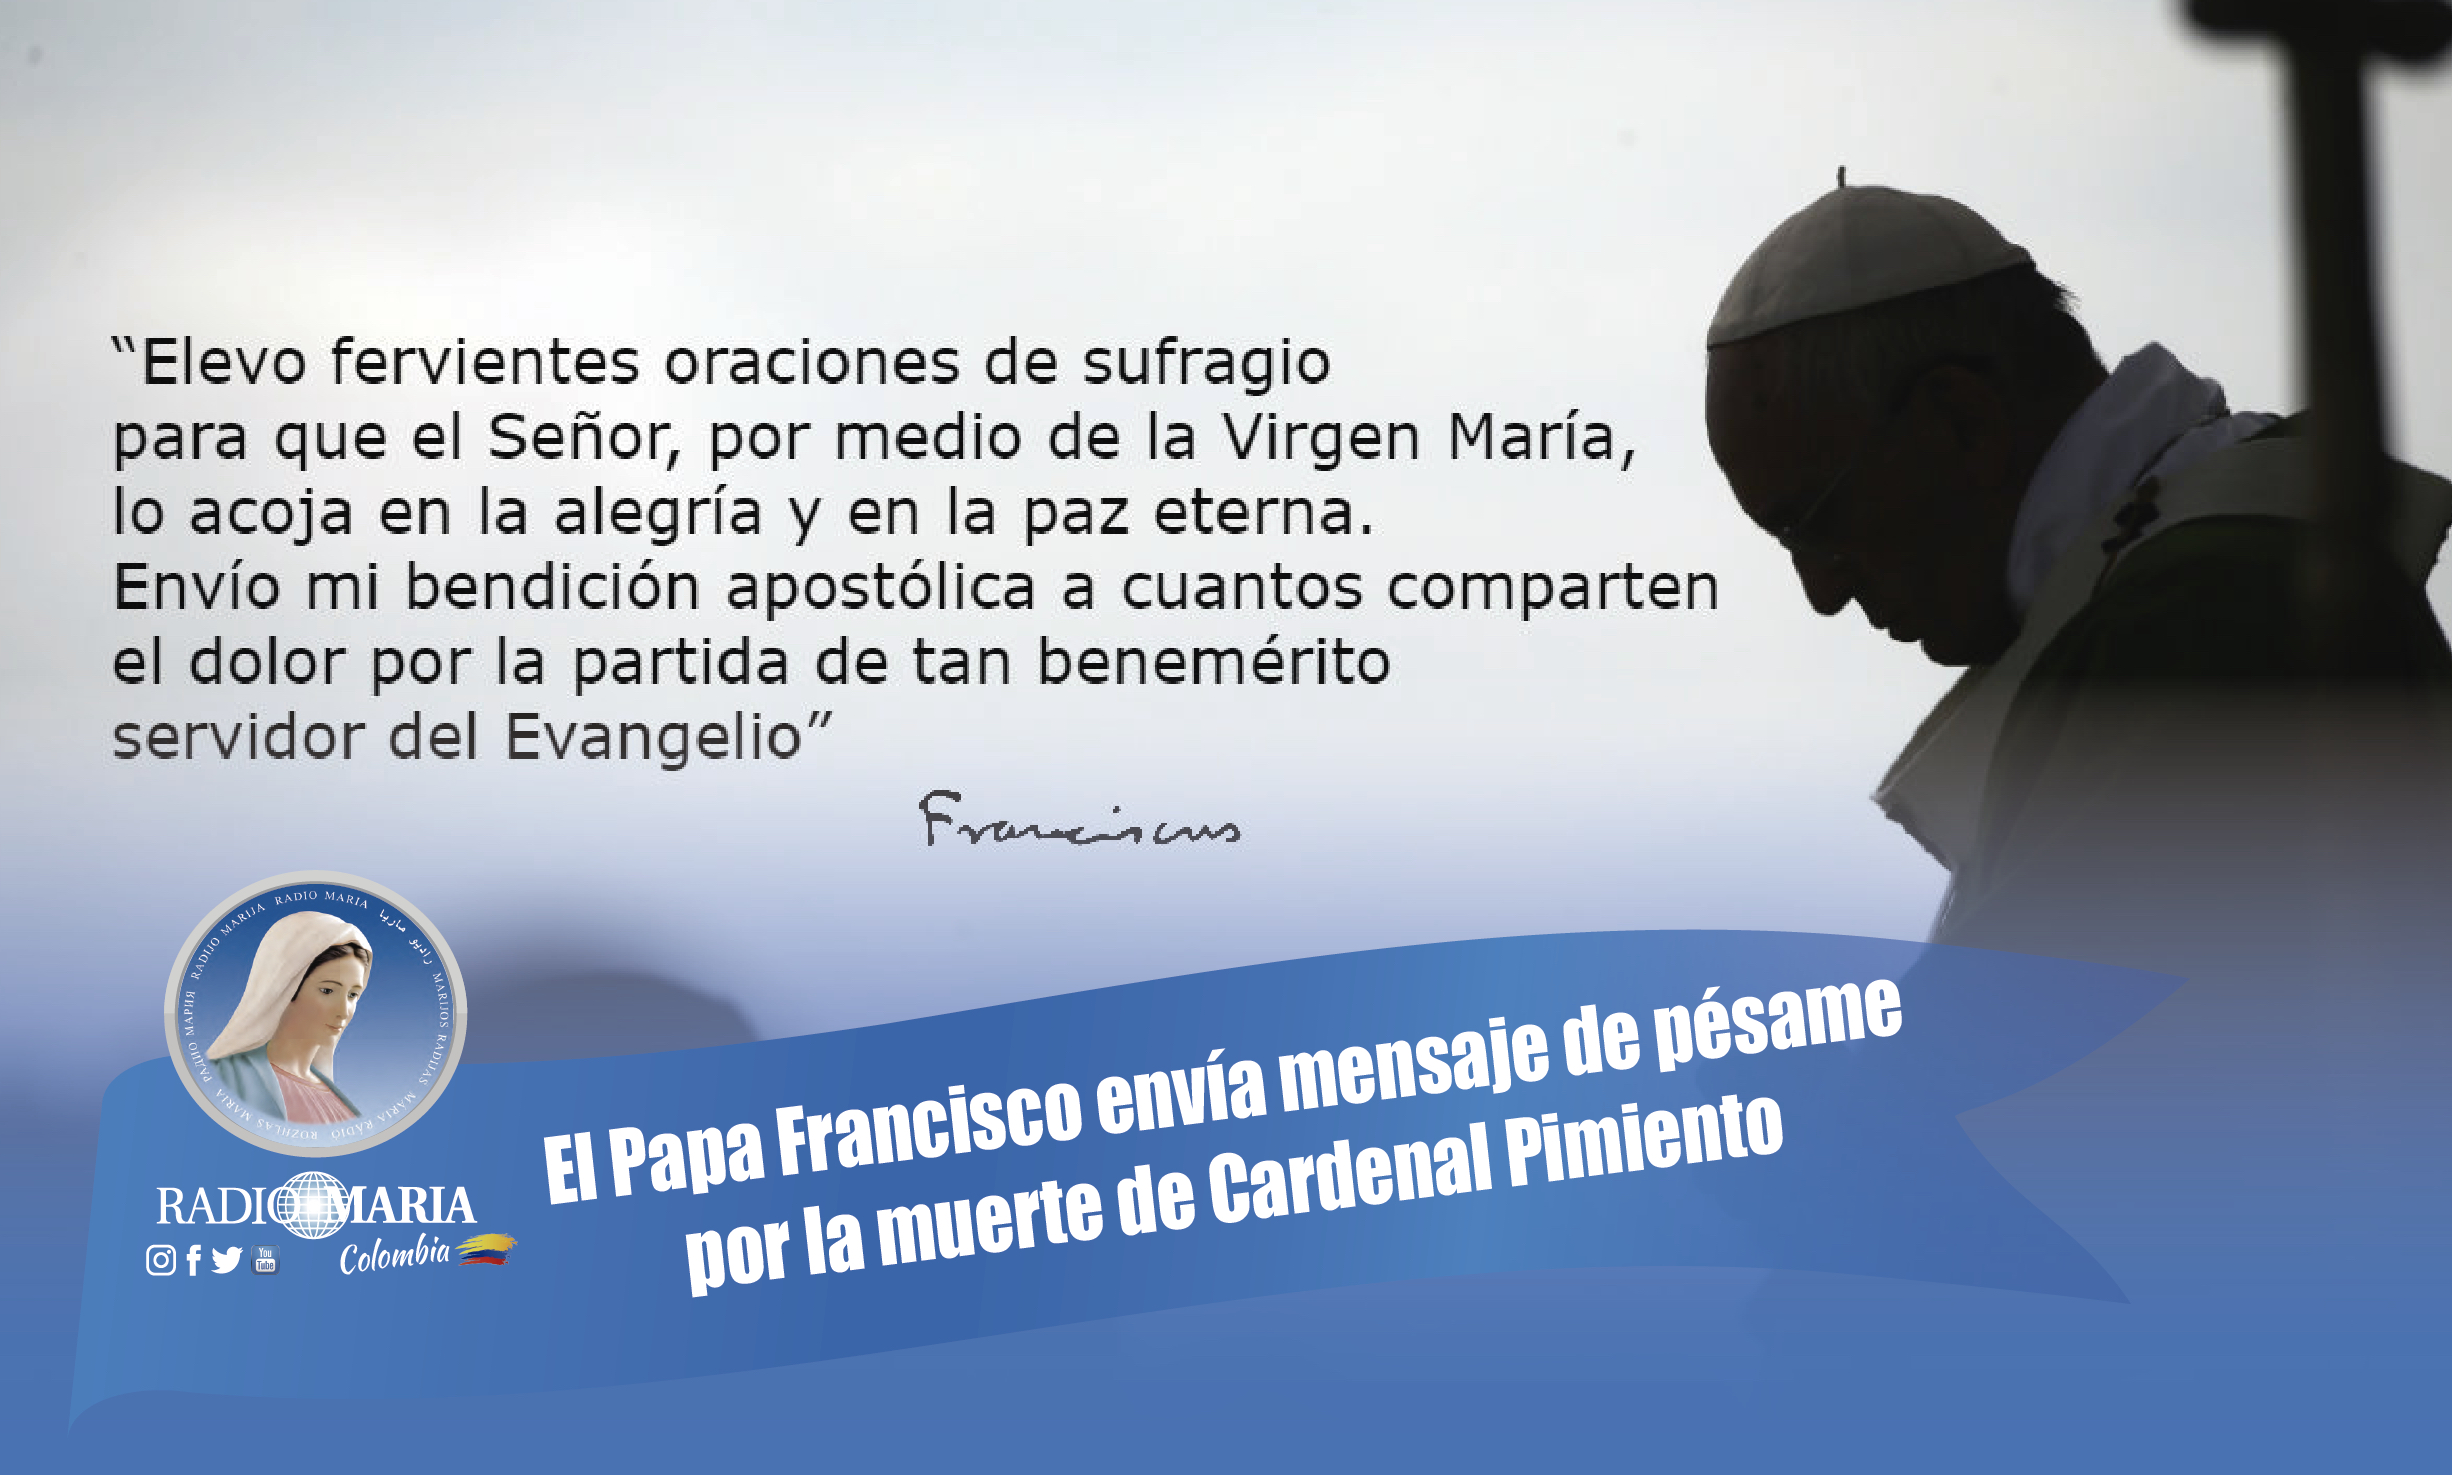 El Papa Francisco envía mensaje de pésame por la muerte de Cardenal Pimiento